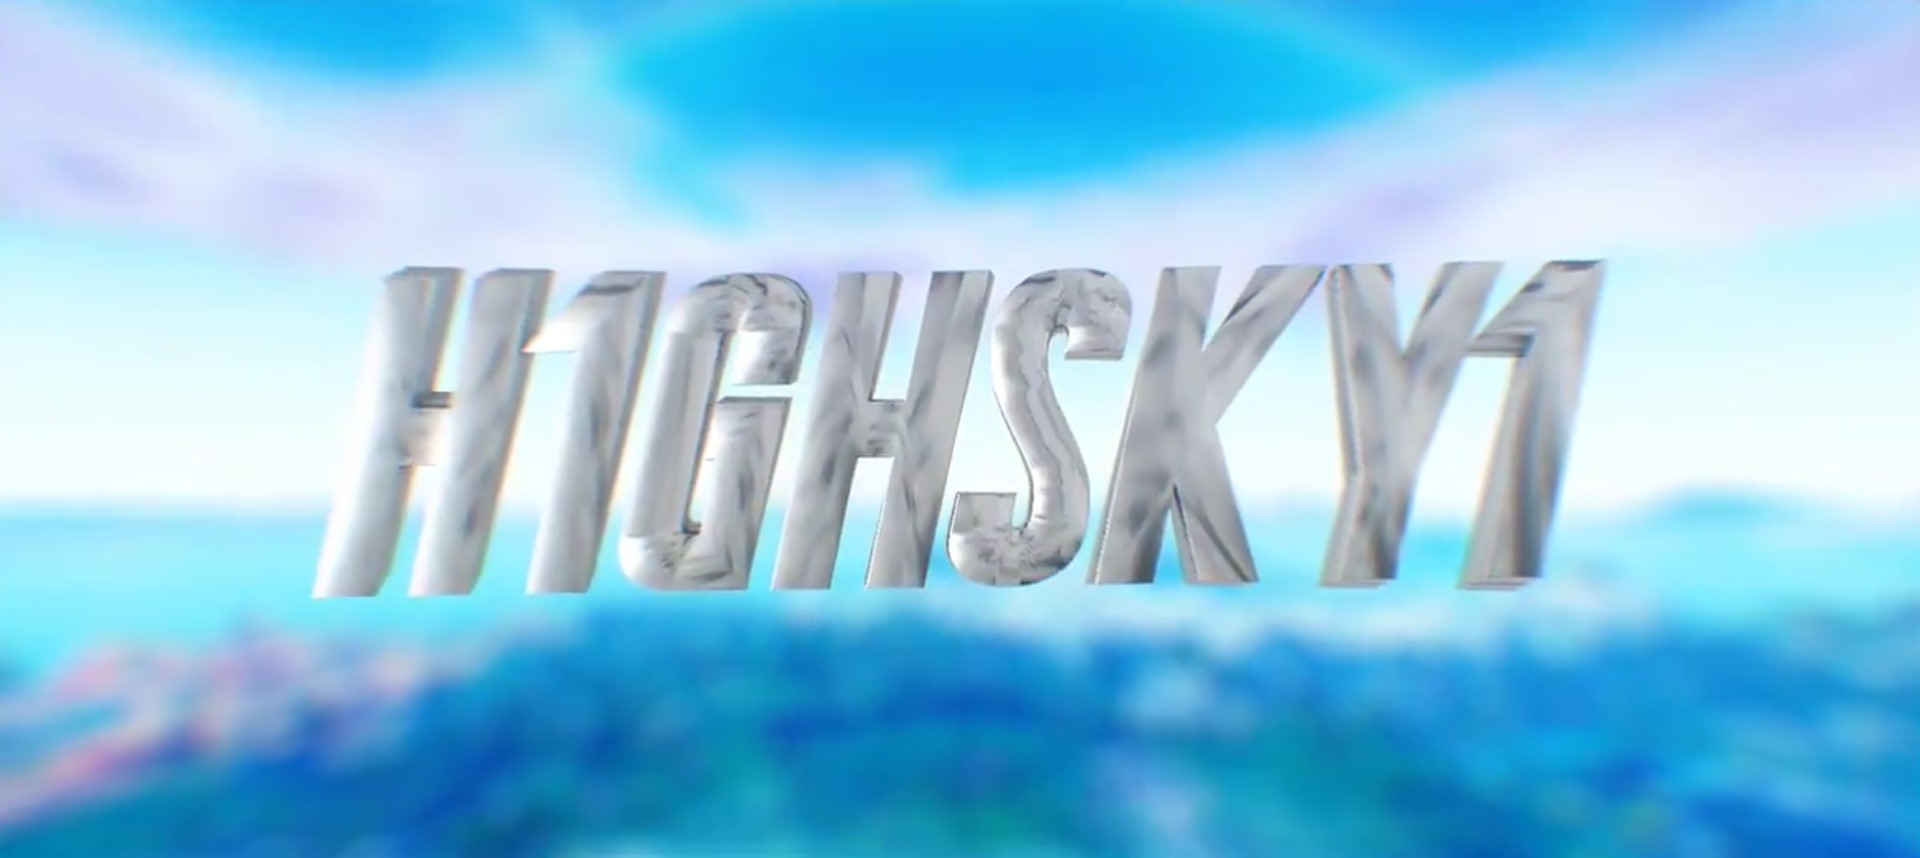 Highsky1